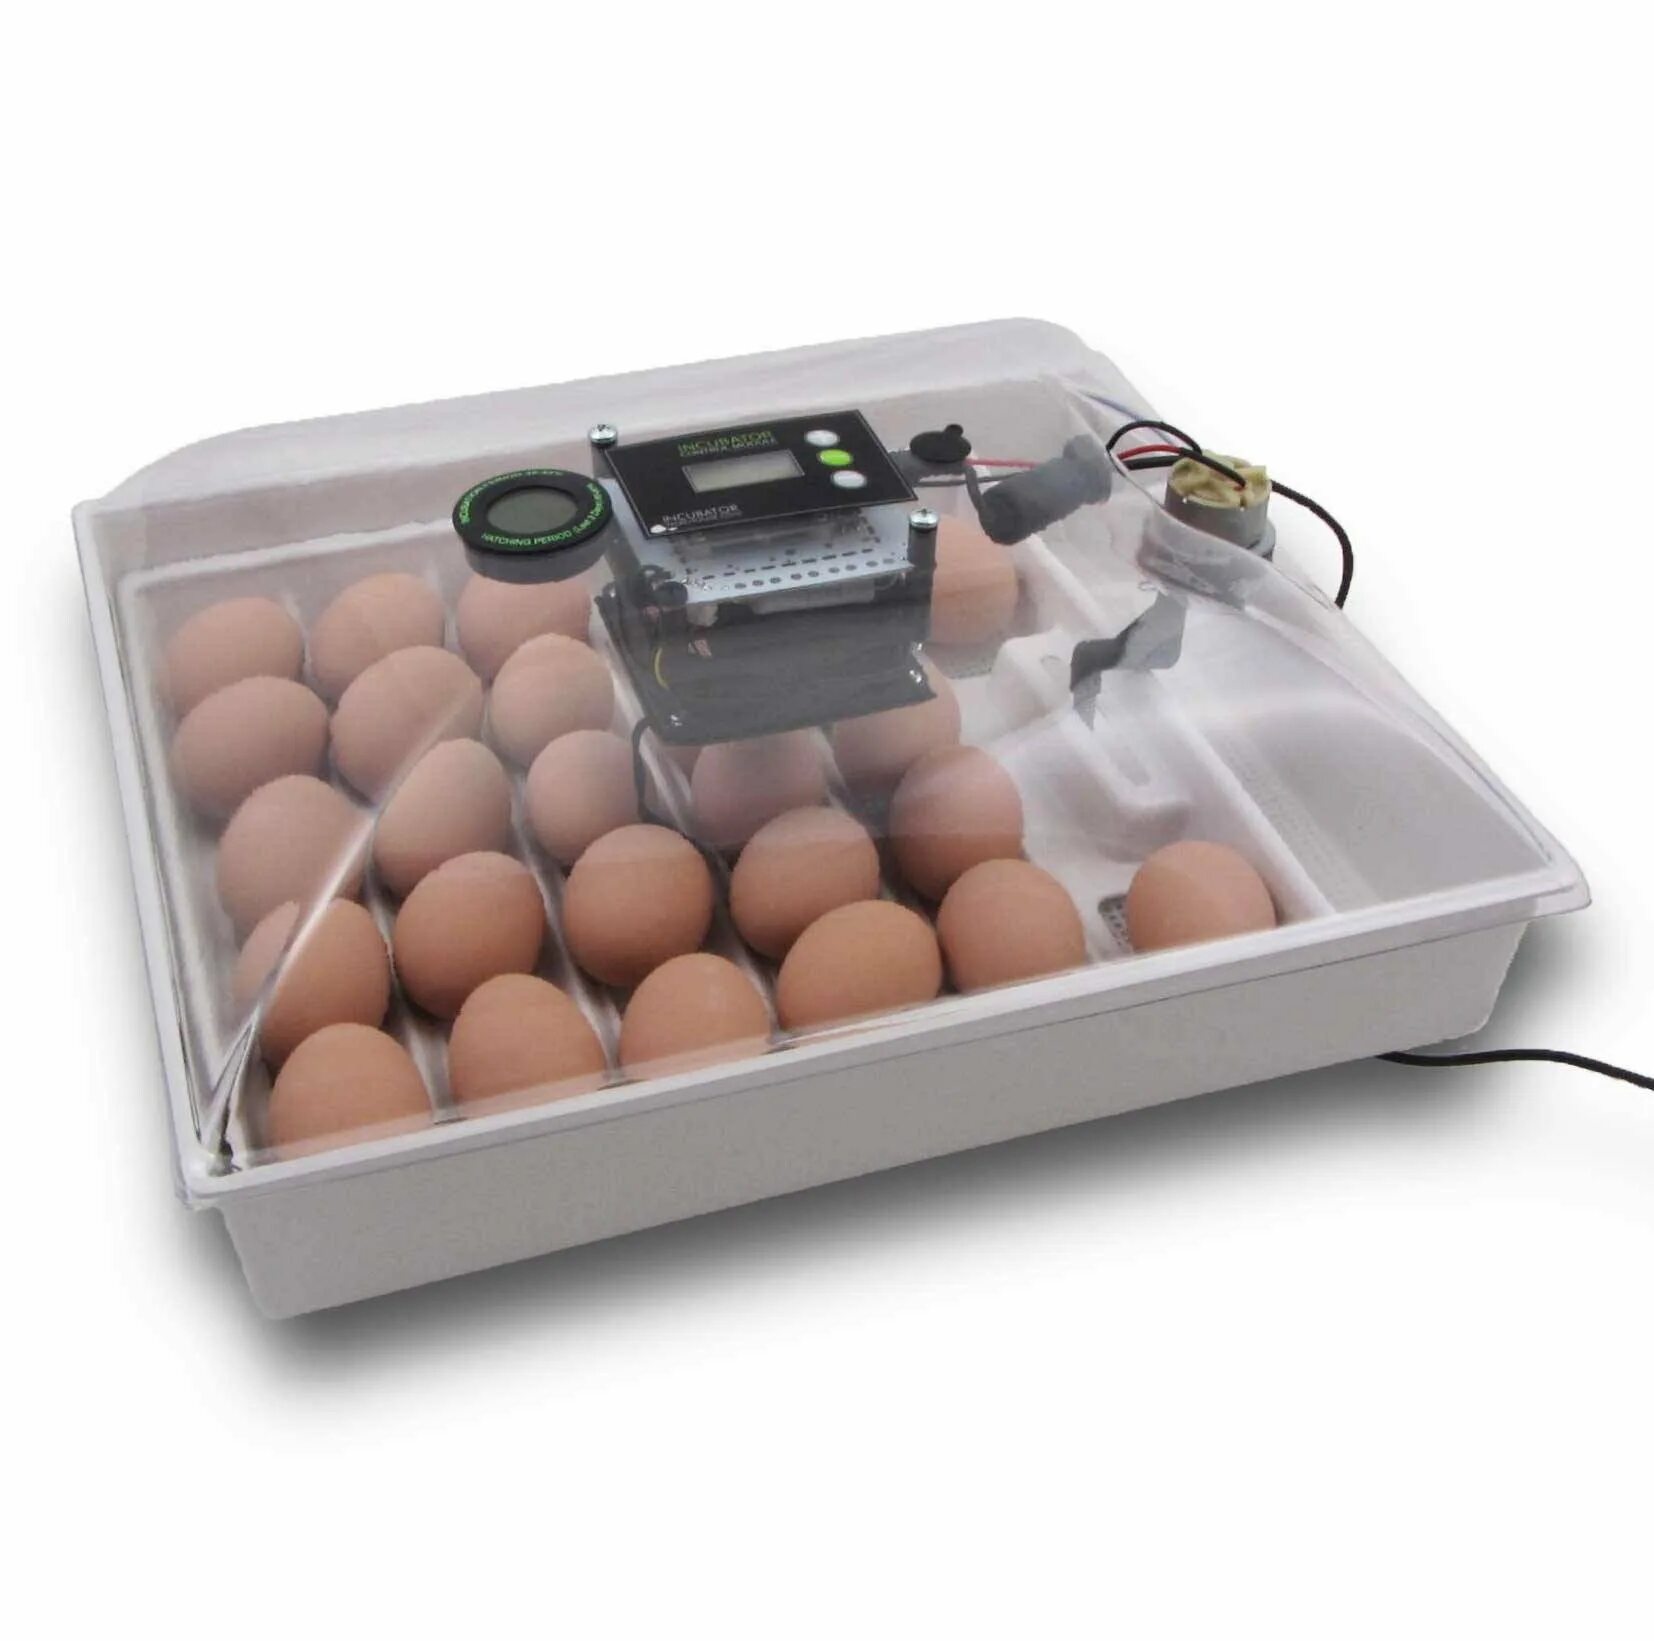 Инкубатор Egg incubator. Инкубатор FLORAFLEX incubator Kit. Инкубатор SITITEK 36. Кв400 binger инкубатор для яиц.